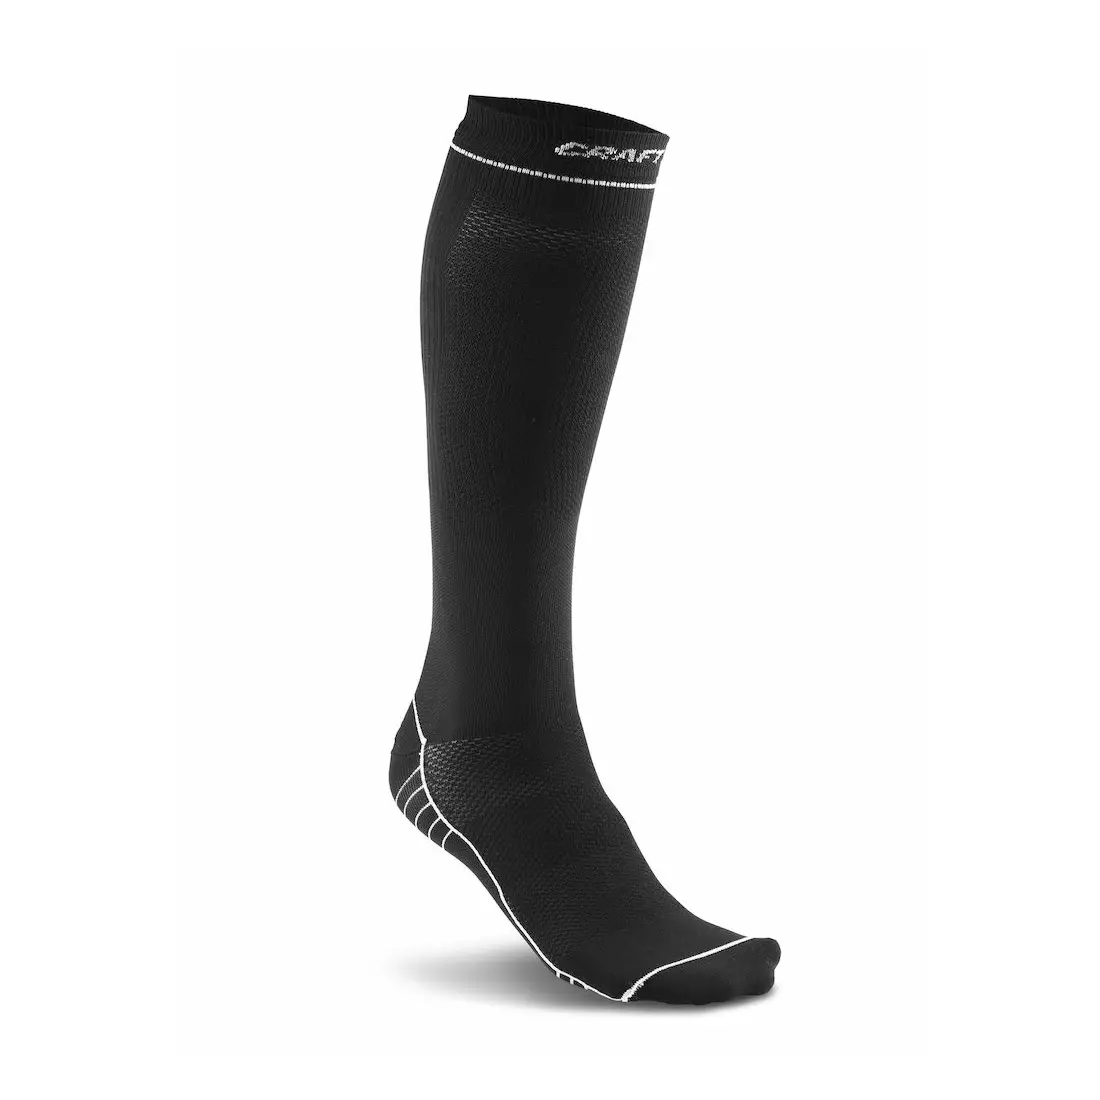 CRAFT kompresné ponožky 1904087-9900 (čierne)